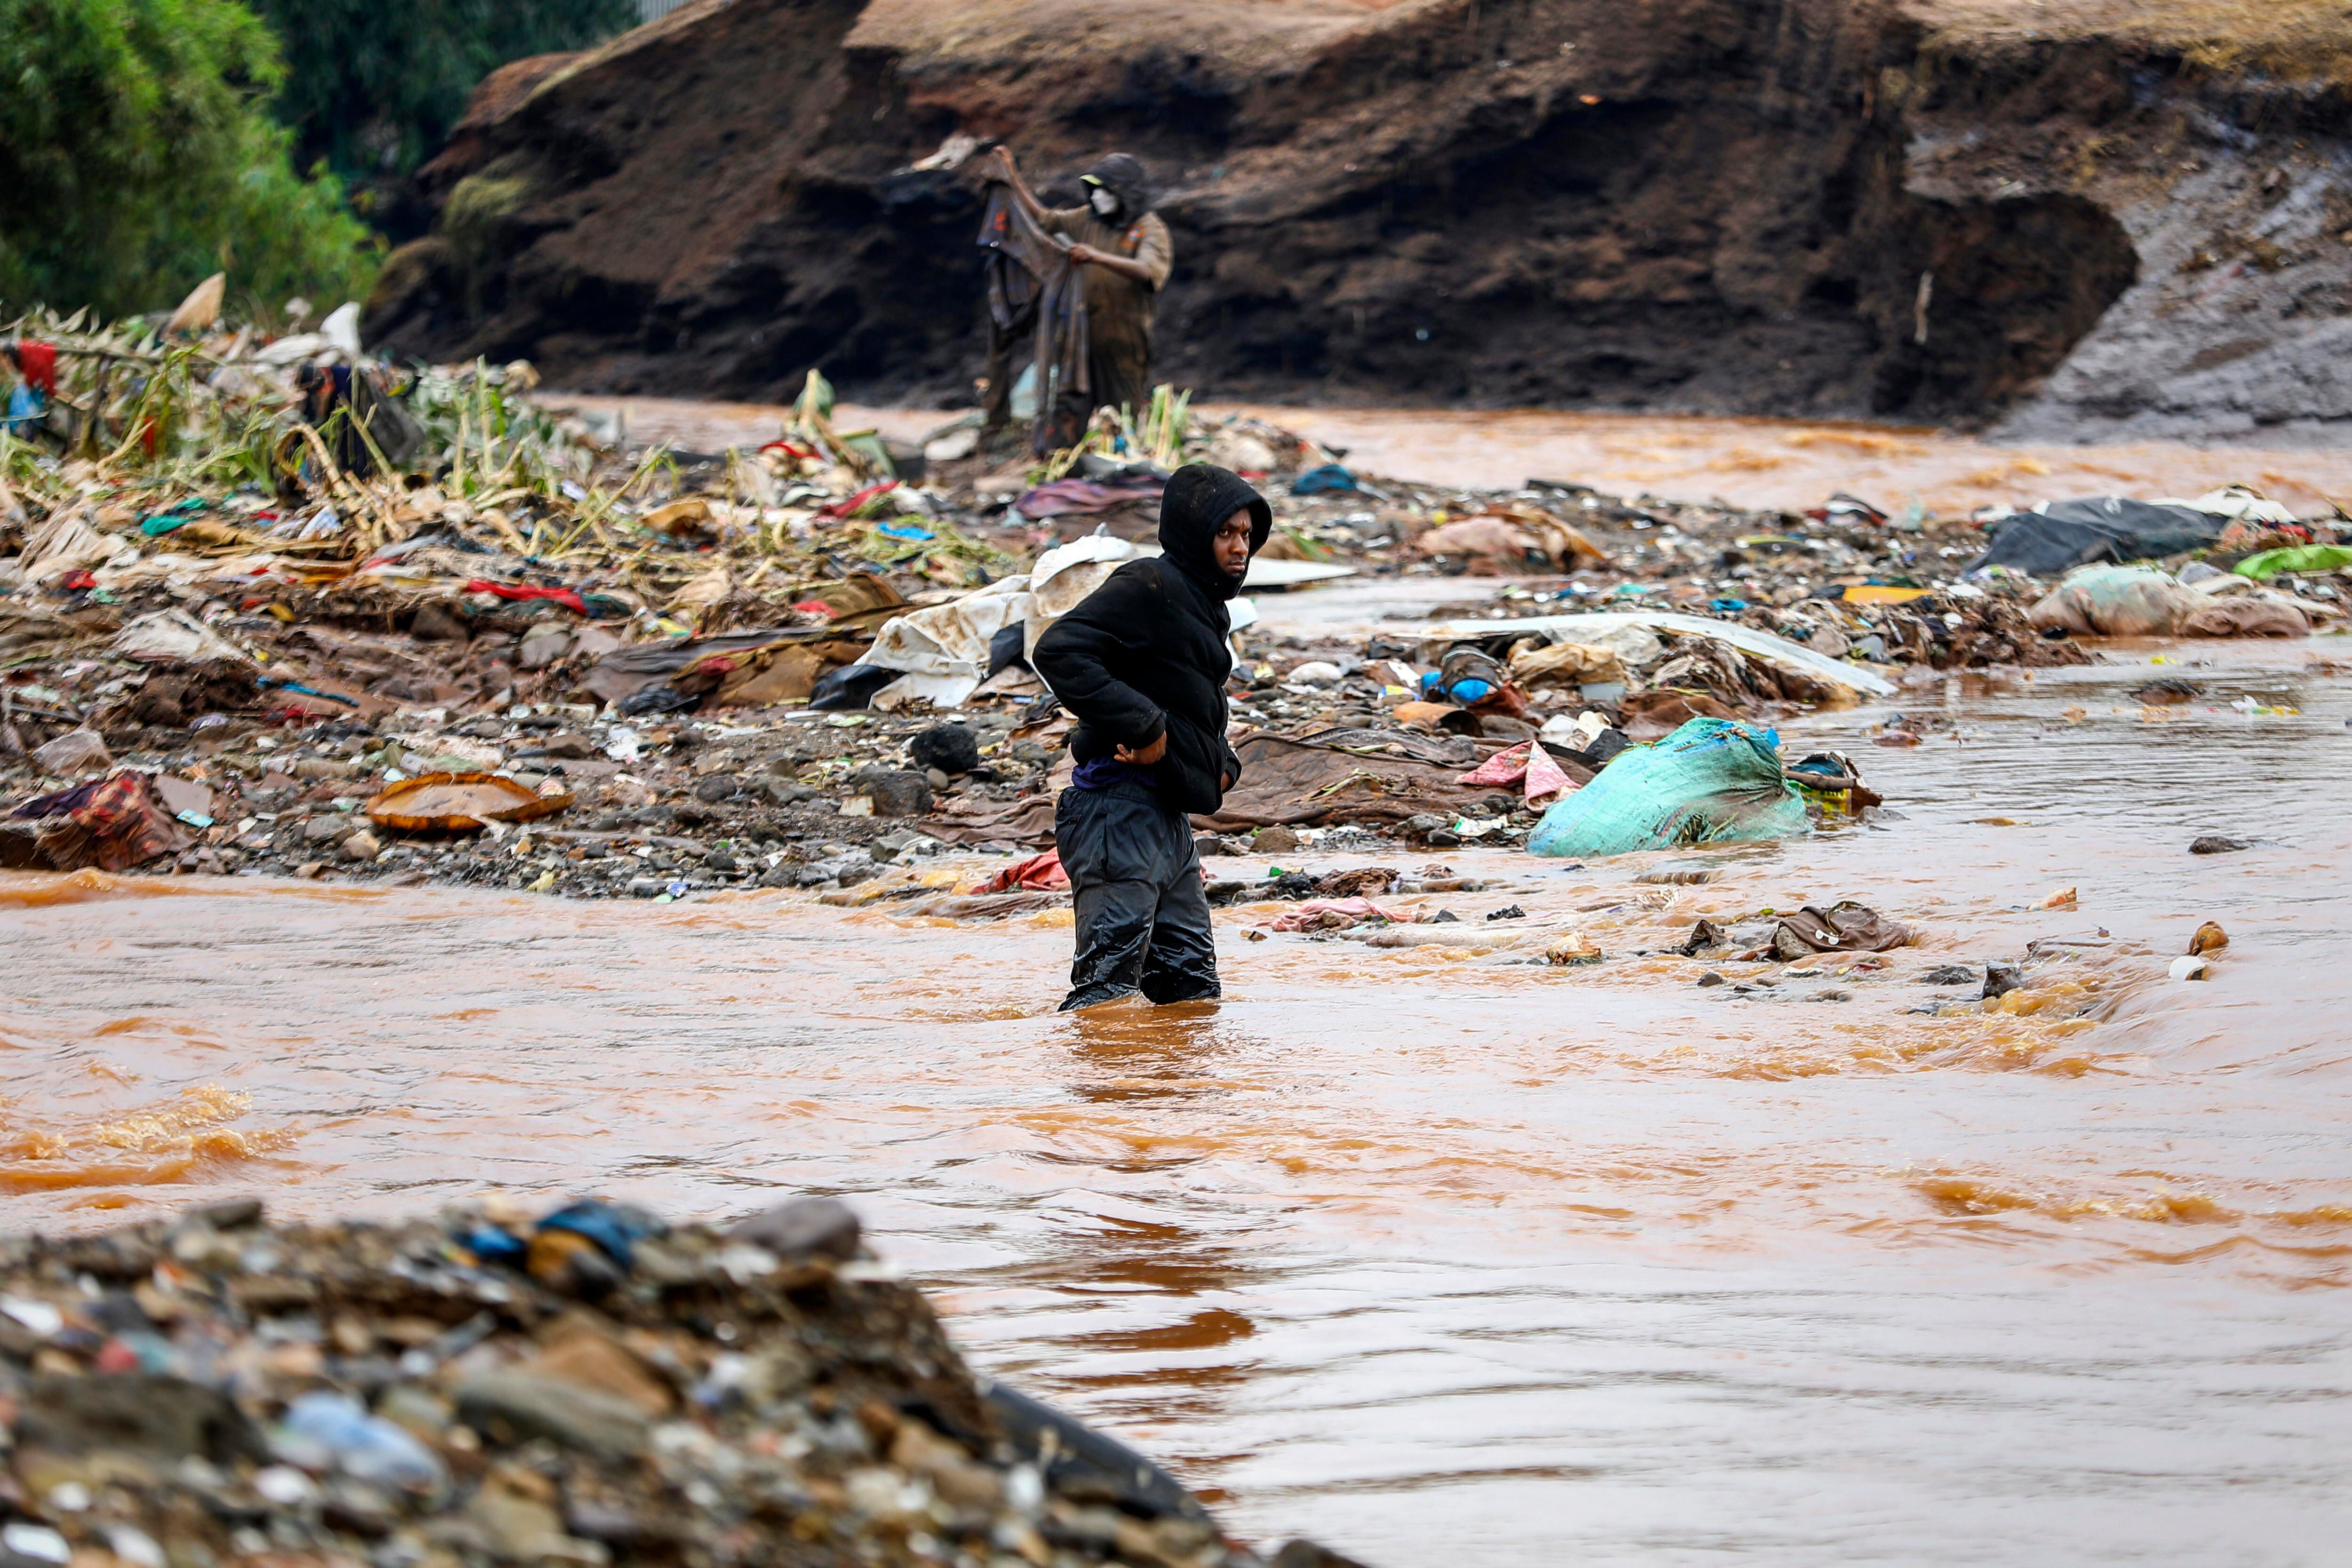 Las fuertes lluvias que azotan diferentes partes de Kenia han provocado decenas de muertes y el desplazamiento de decenas de miles de personas, según la ONU. EFE/EPA/Daniel Irungu